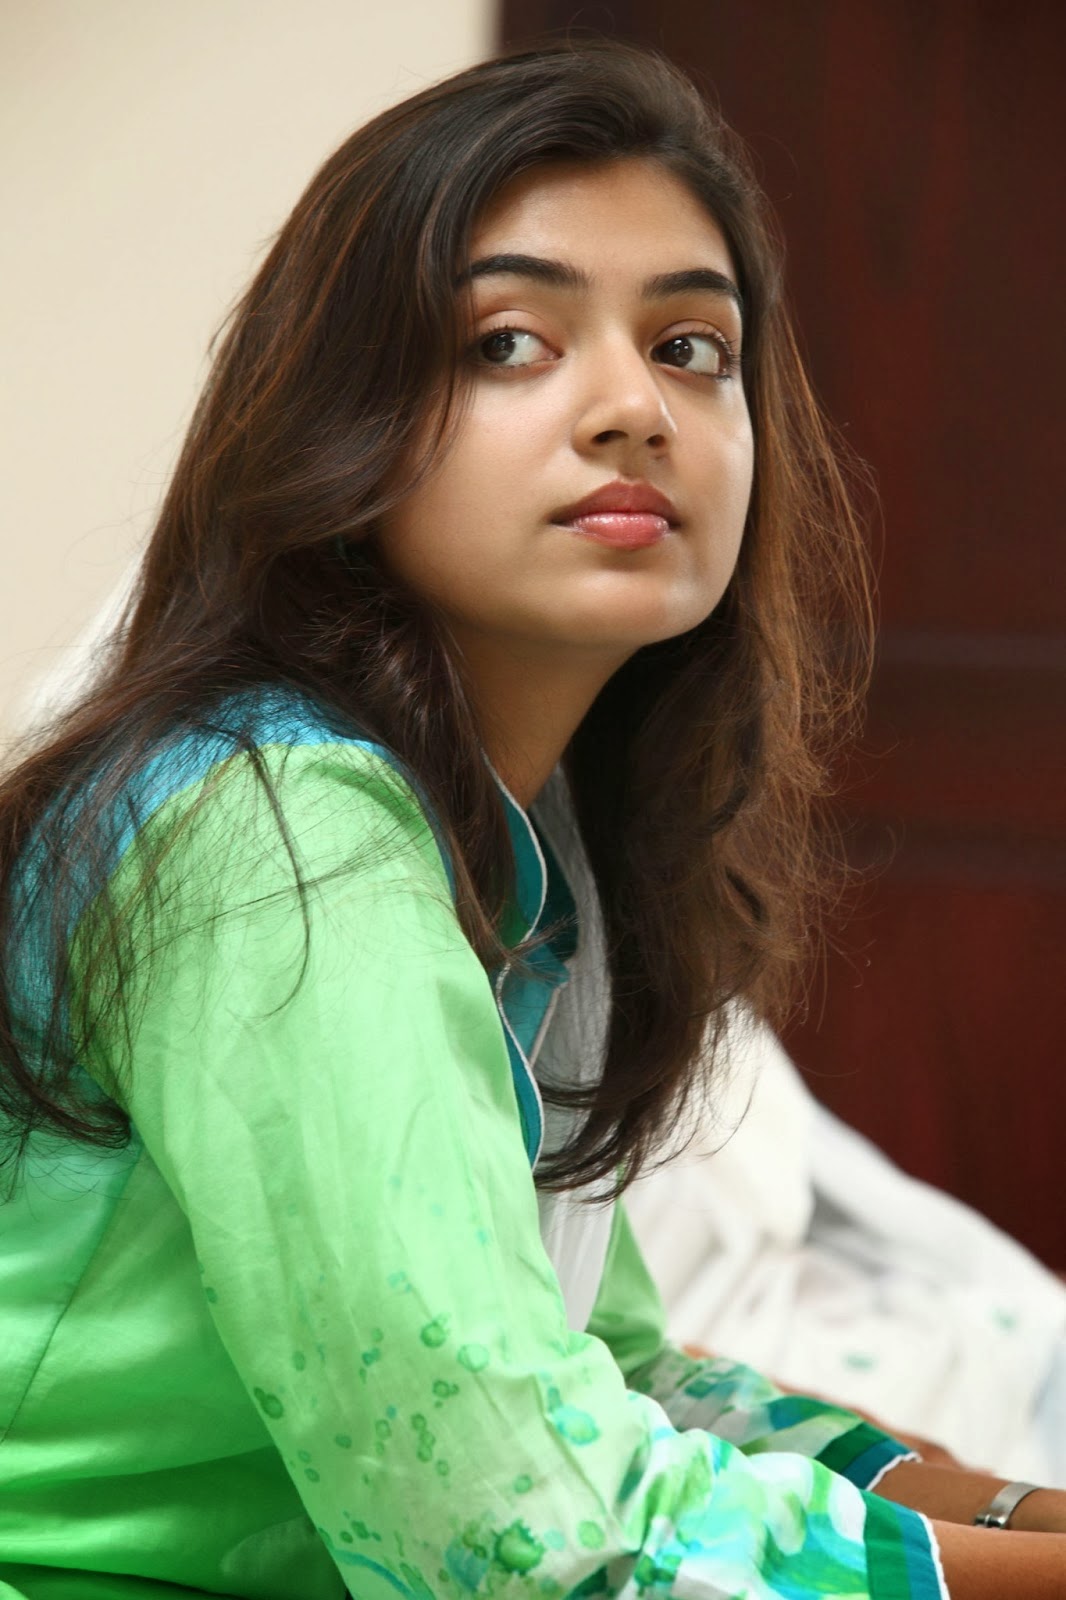 South Indian Actress For You: nazriya nazim | Latest film Photos